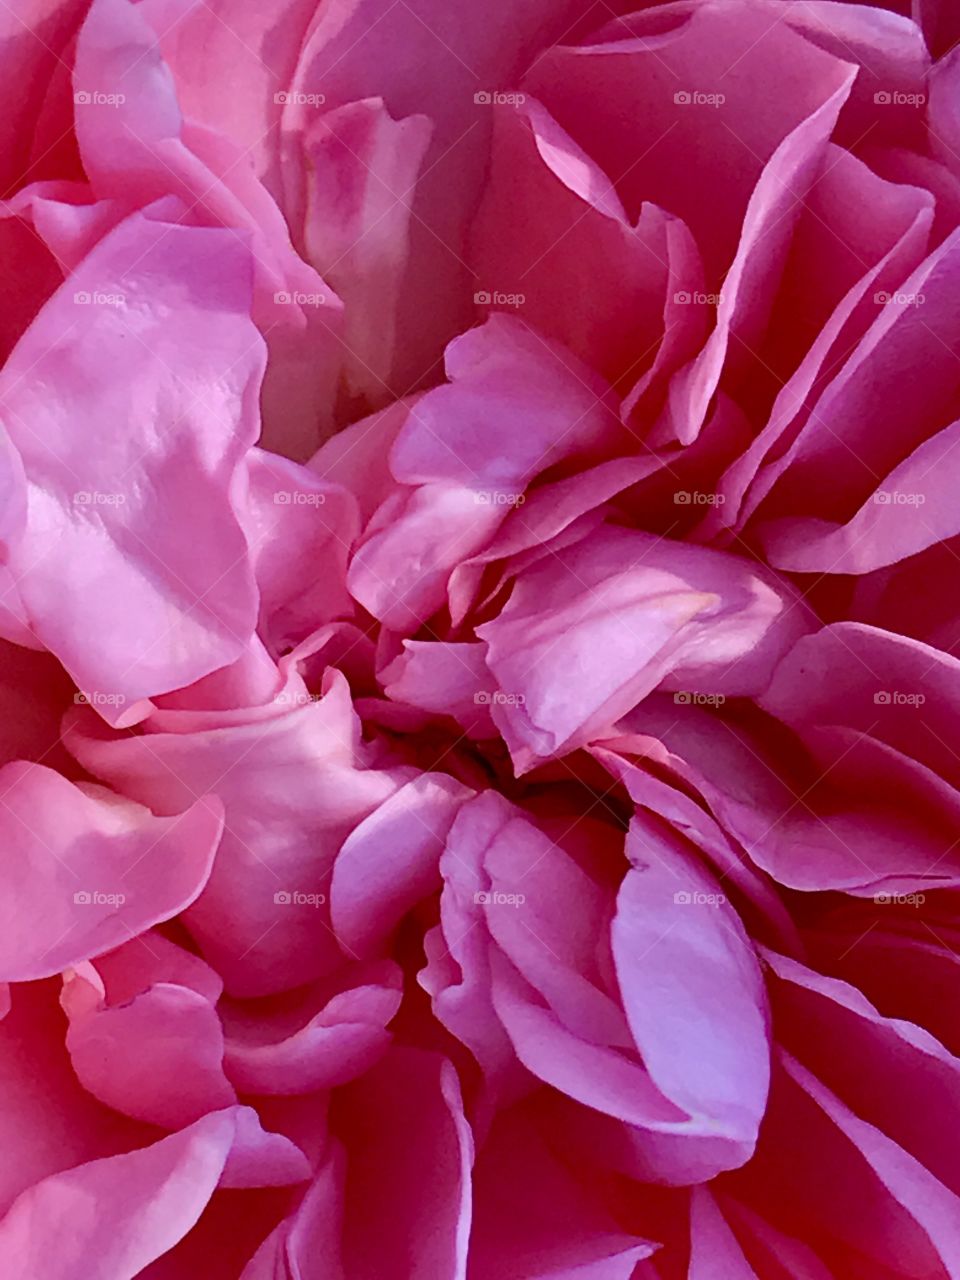 Flower 
Pink
